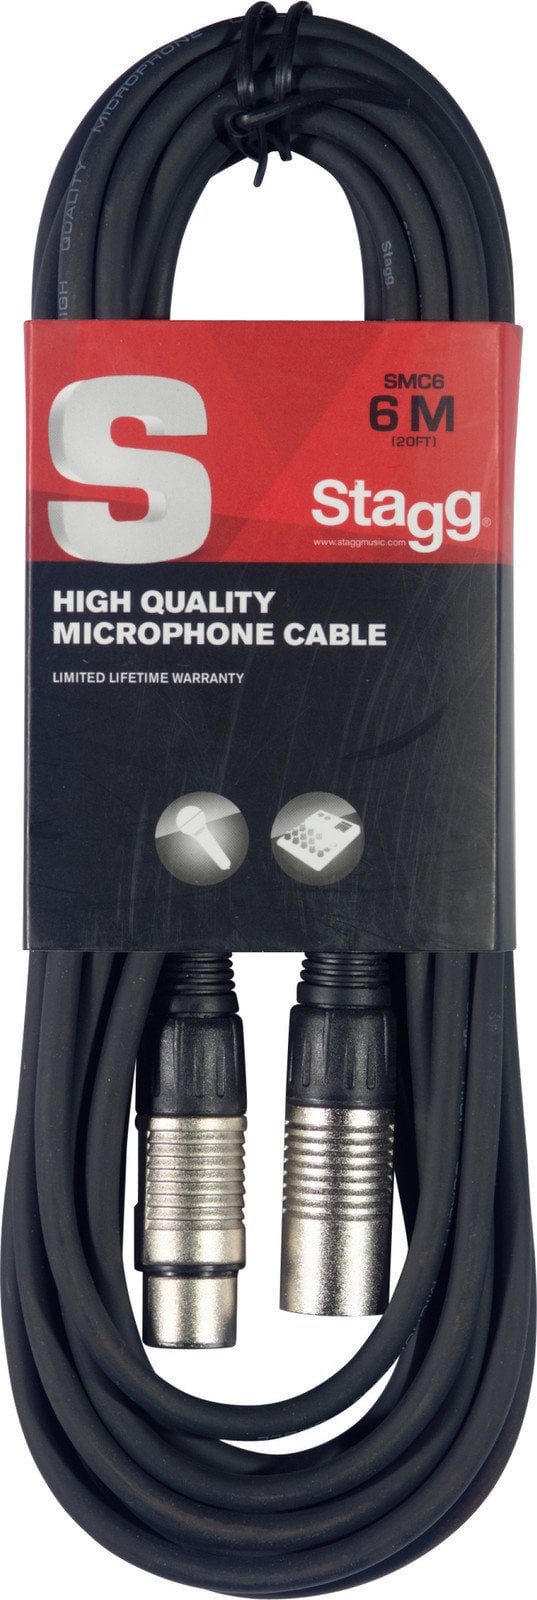 Câble pour microphone Stagg SMC6 Noir 6 m